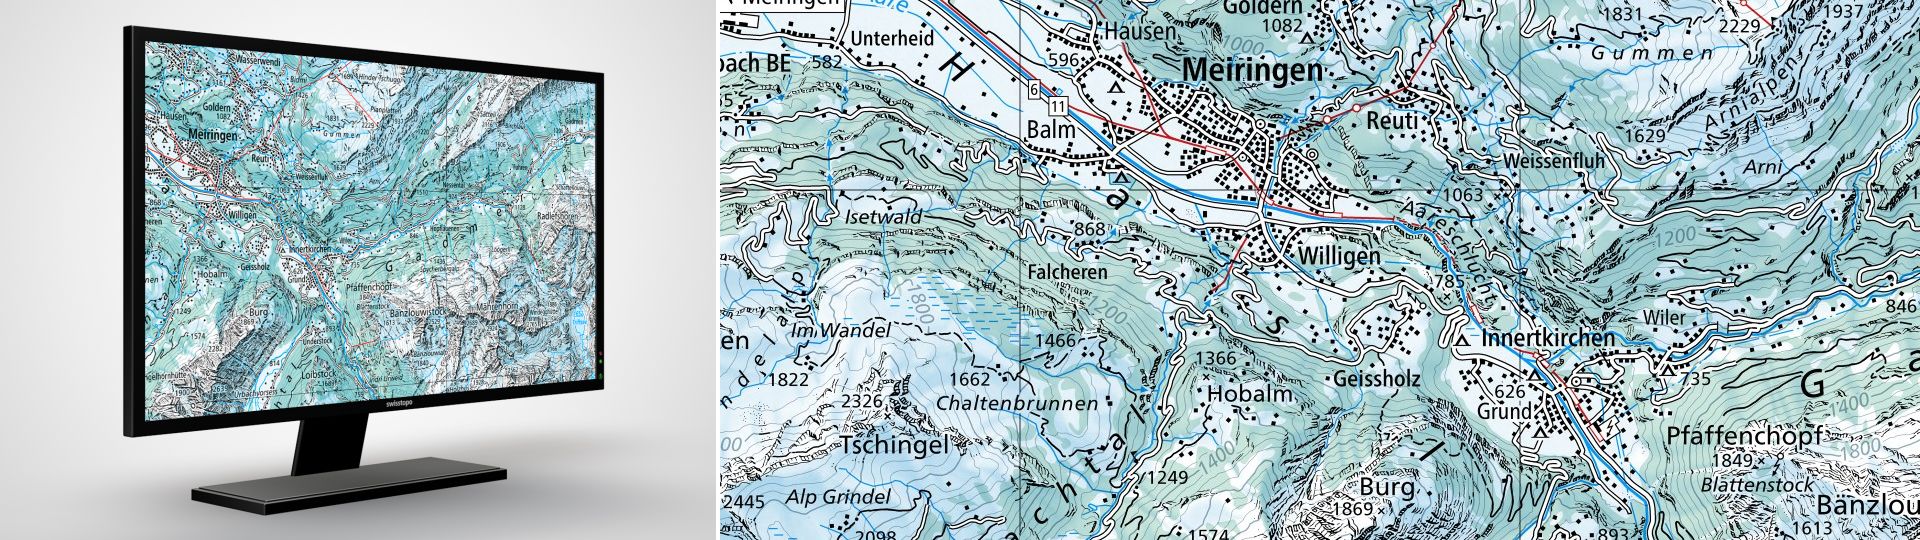 Swiss Map Raster Winter 100: Swiss Map Raster Winter 100 ist die digitale Landeskarte 1:100 000 in winterlicher Darstellung im Rasterformat.